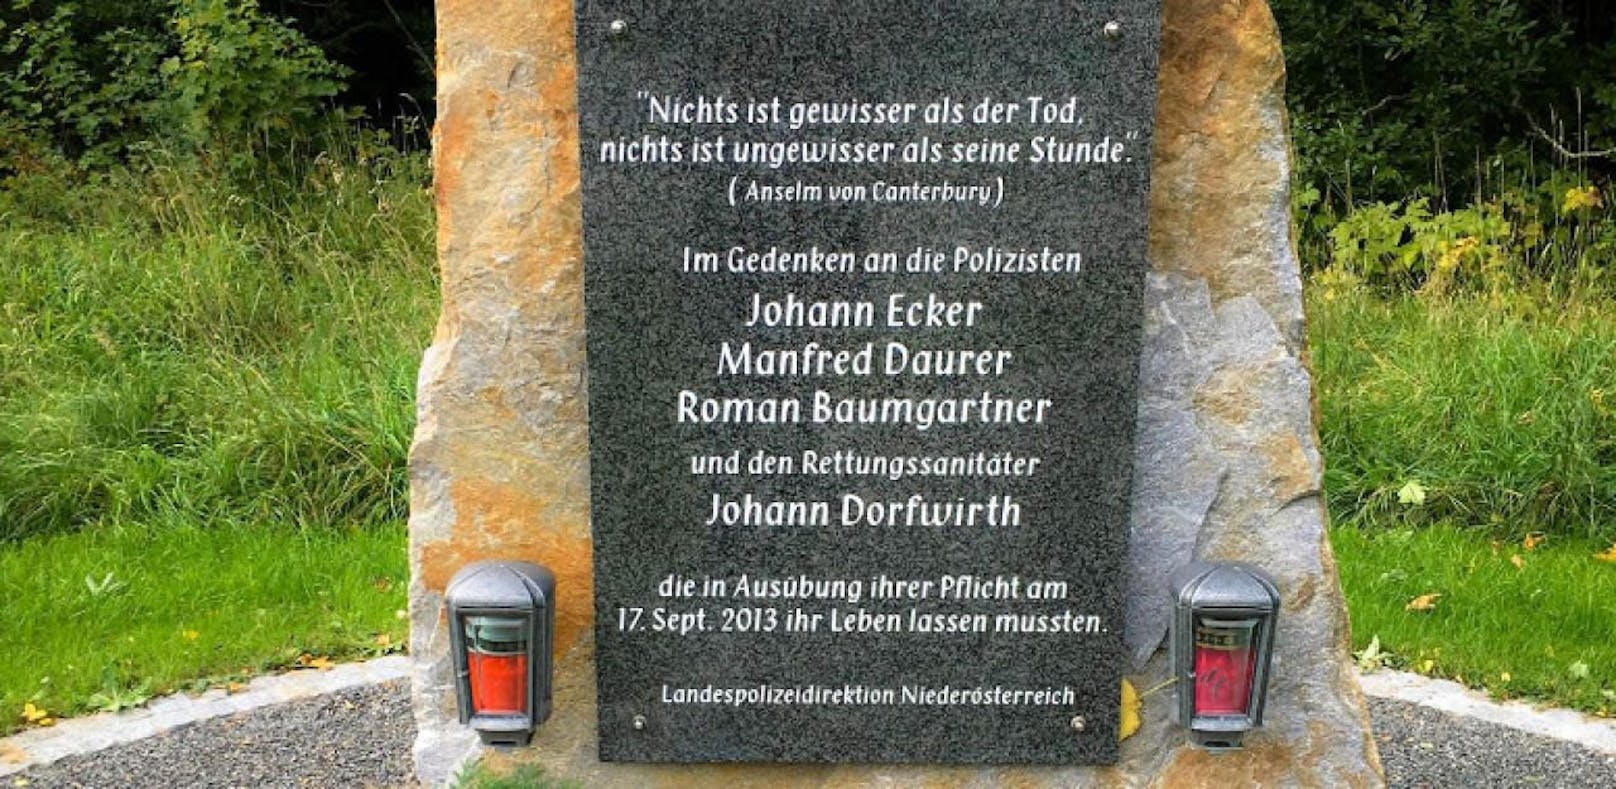 Gedenken an die Opfer in Annaberg am Sonntag.